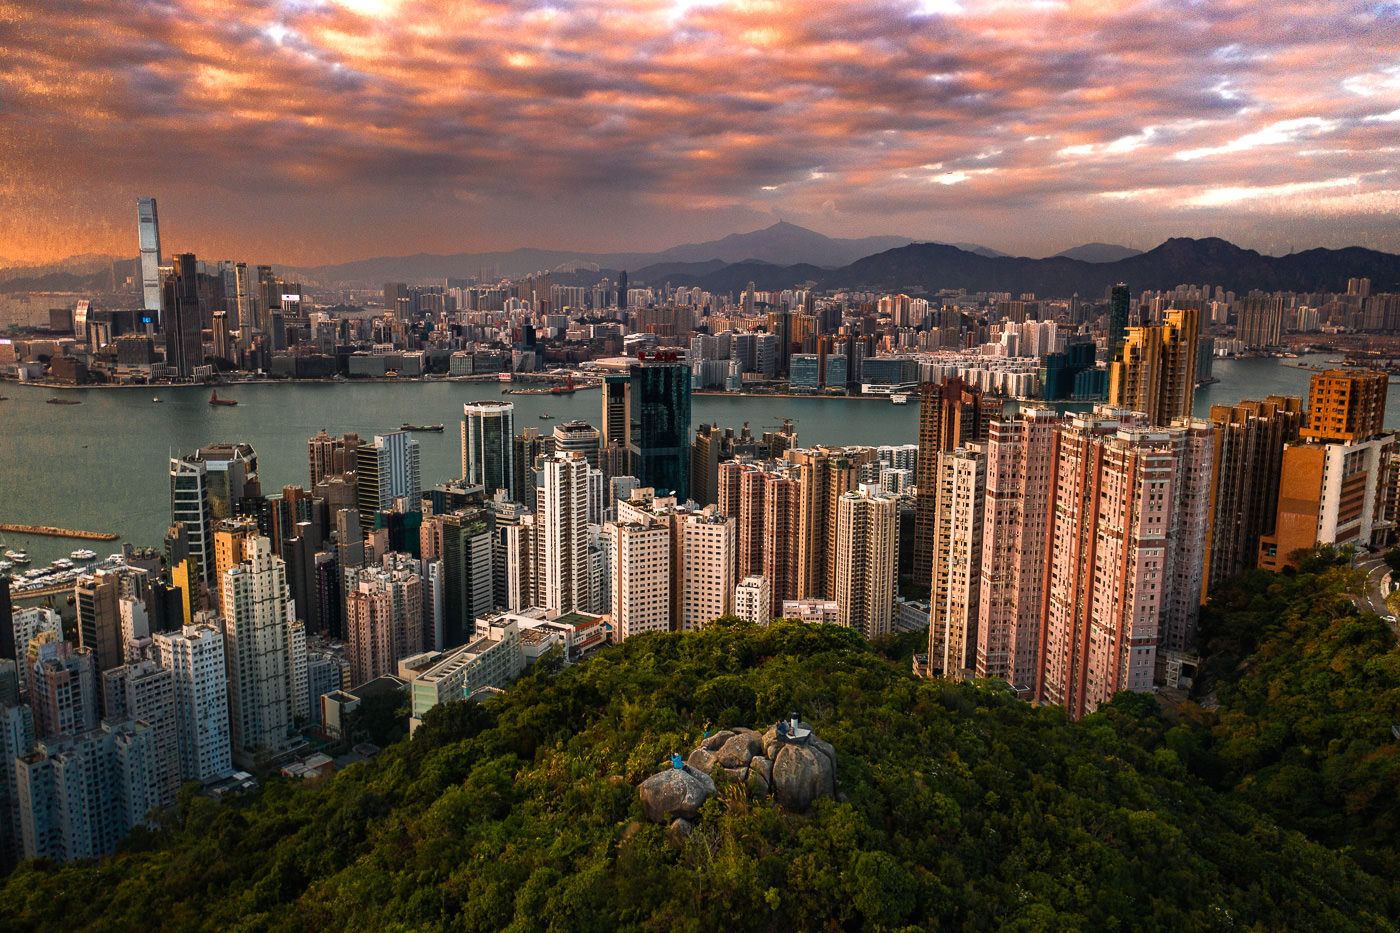 BRAEMAR HILL SUNSET HIKE IN HONG KONG